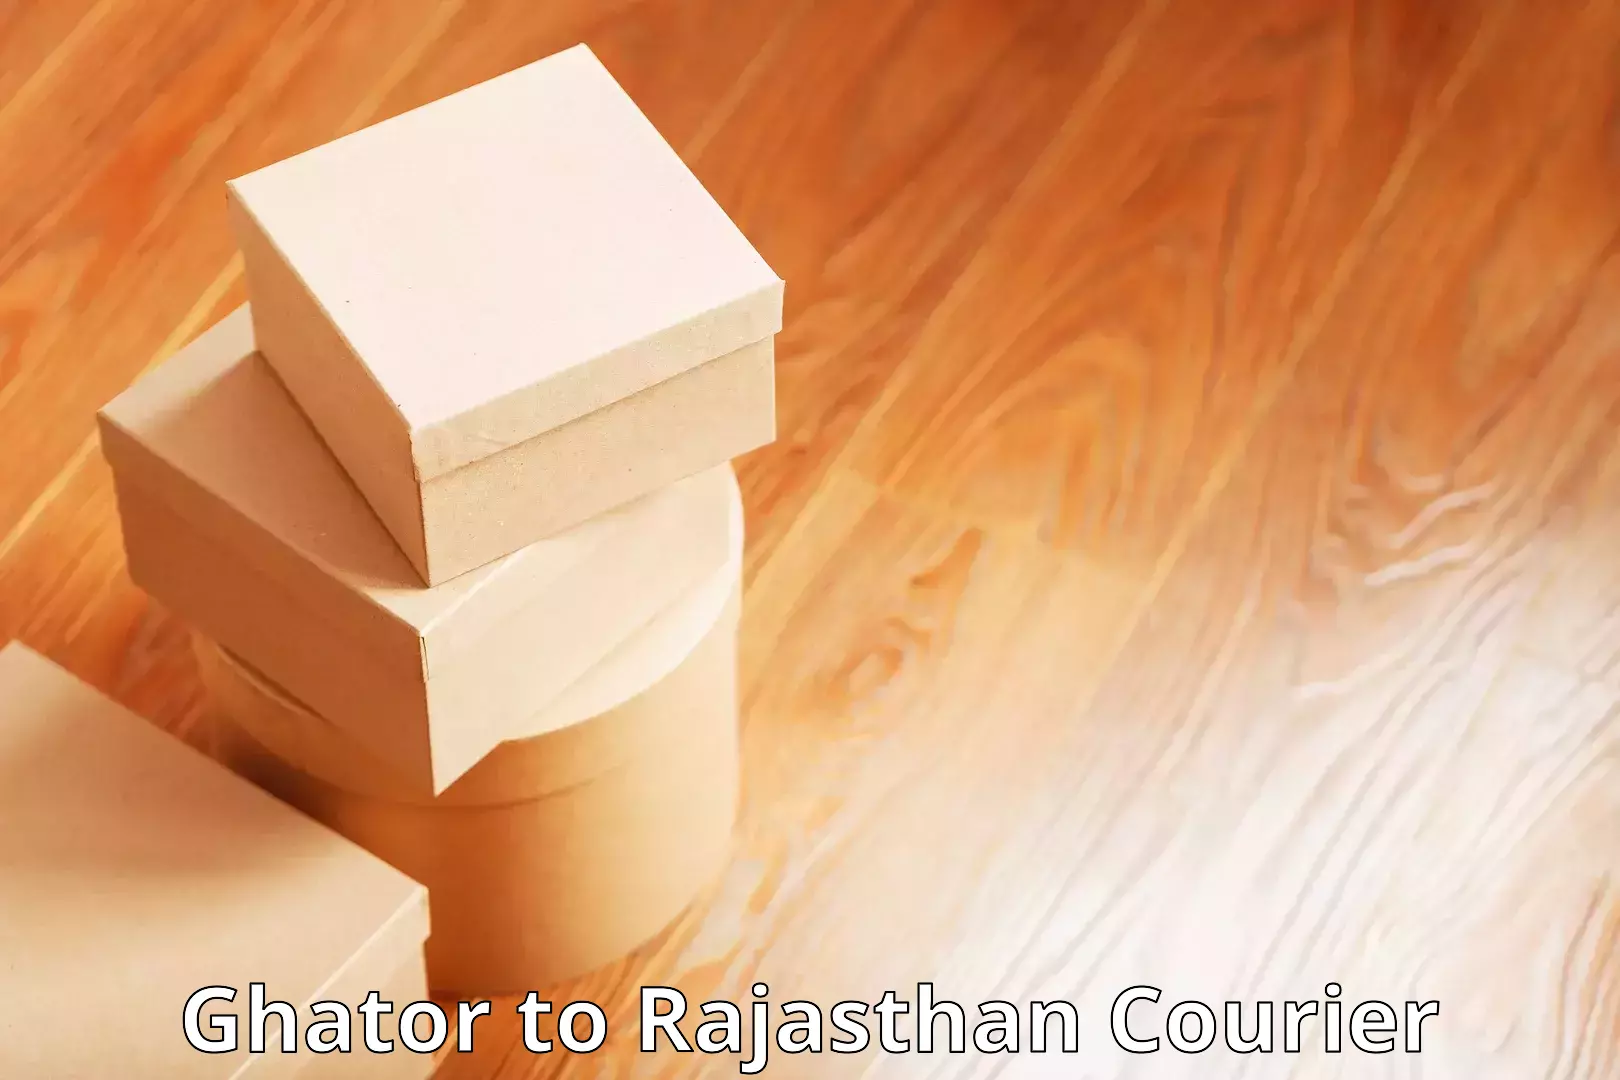 Next day courier Ghator to Pratapgarh Rajasthan